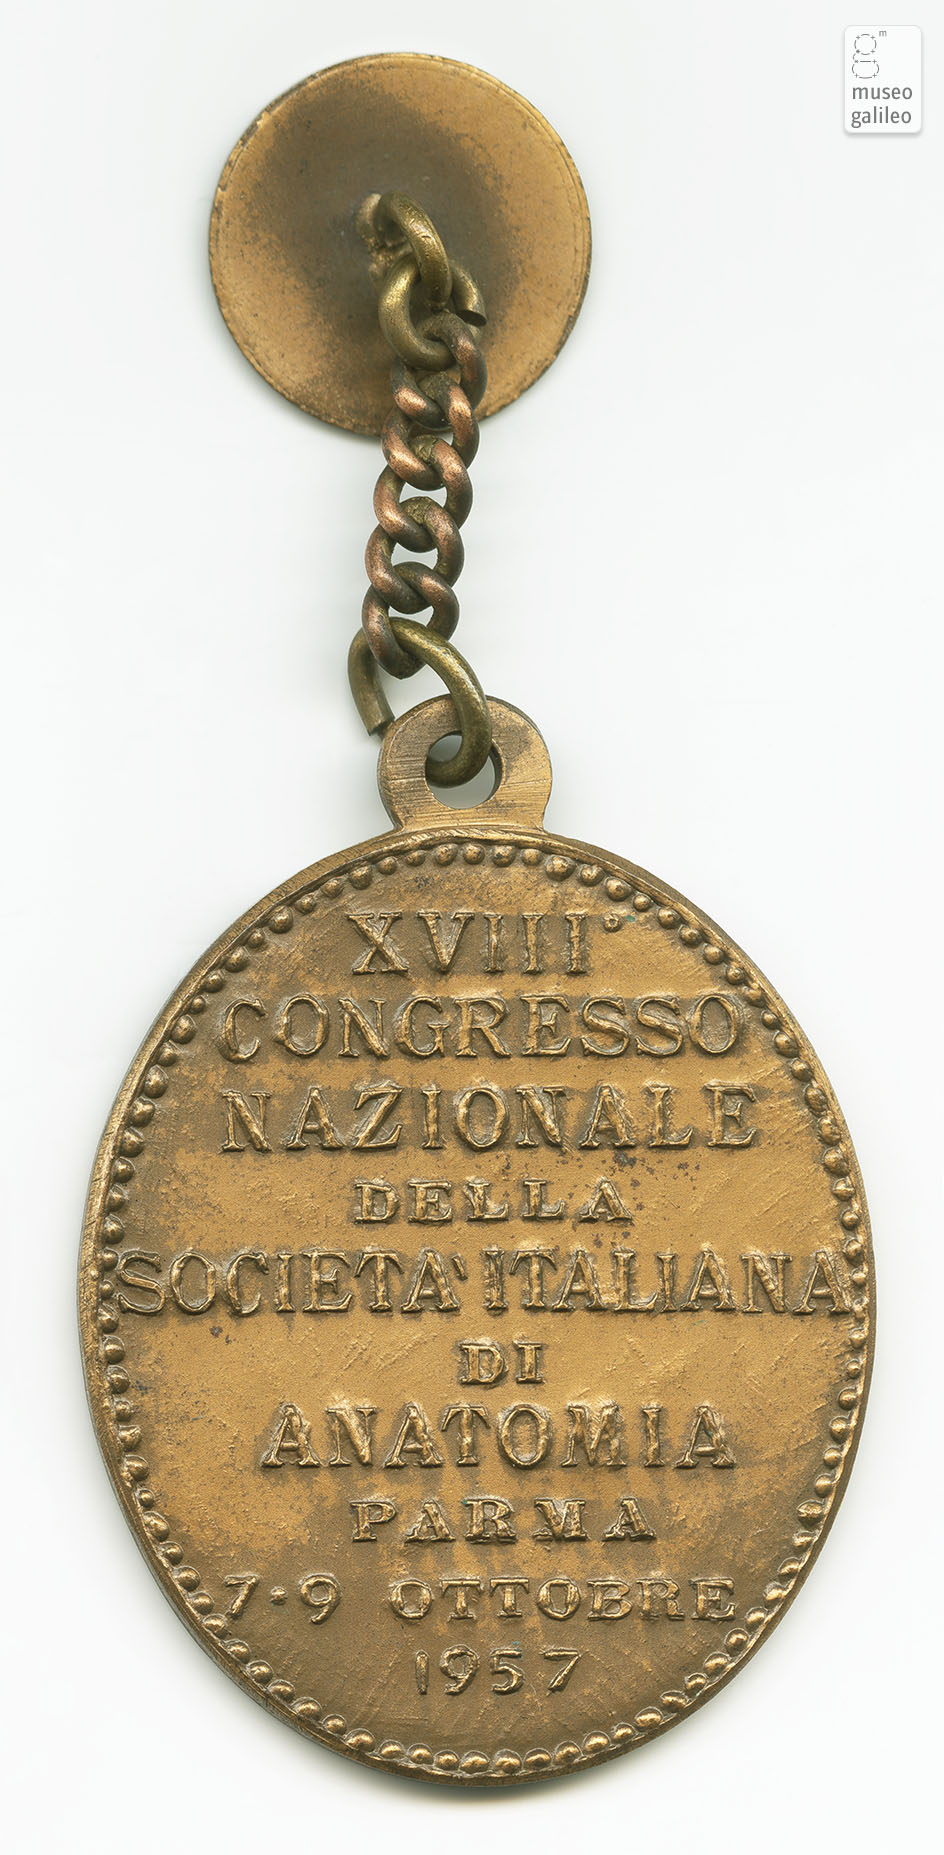 Congresso Nazionale della Società Italiana di Anatomia (Parma, 1957) - reverse